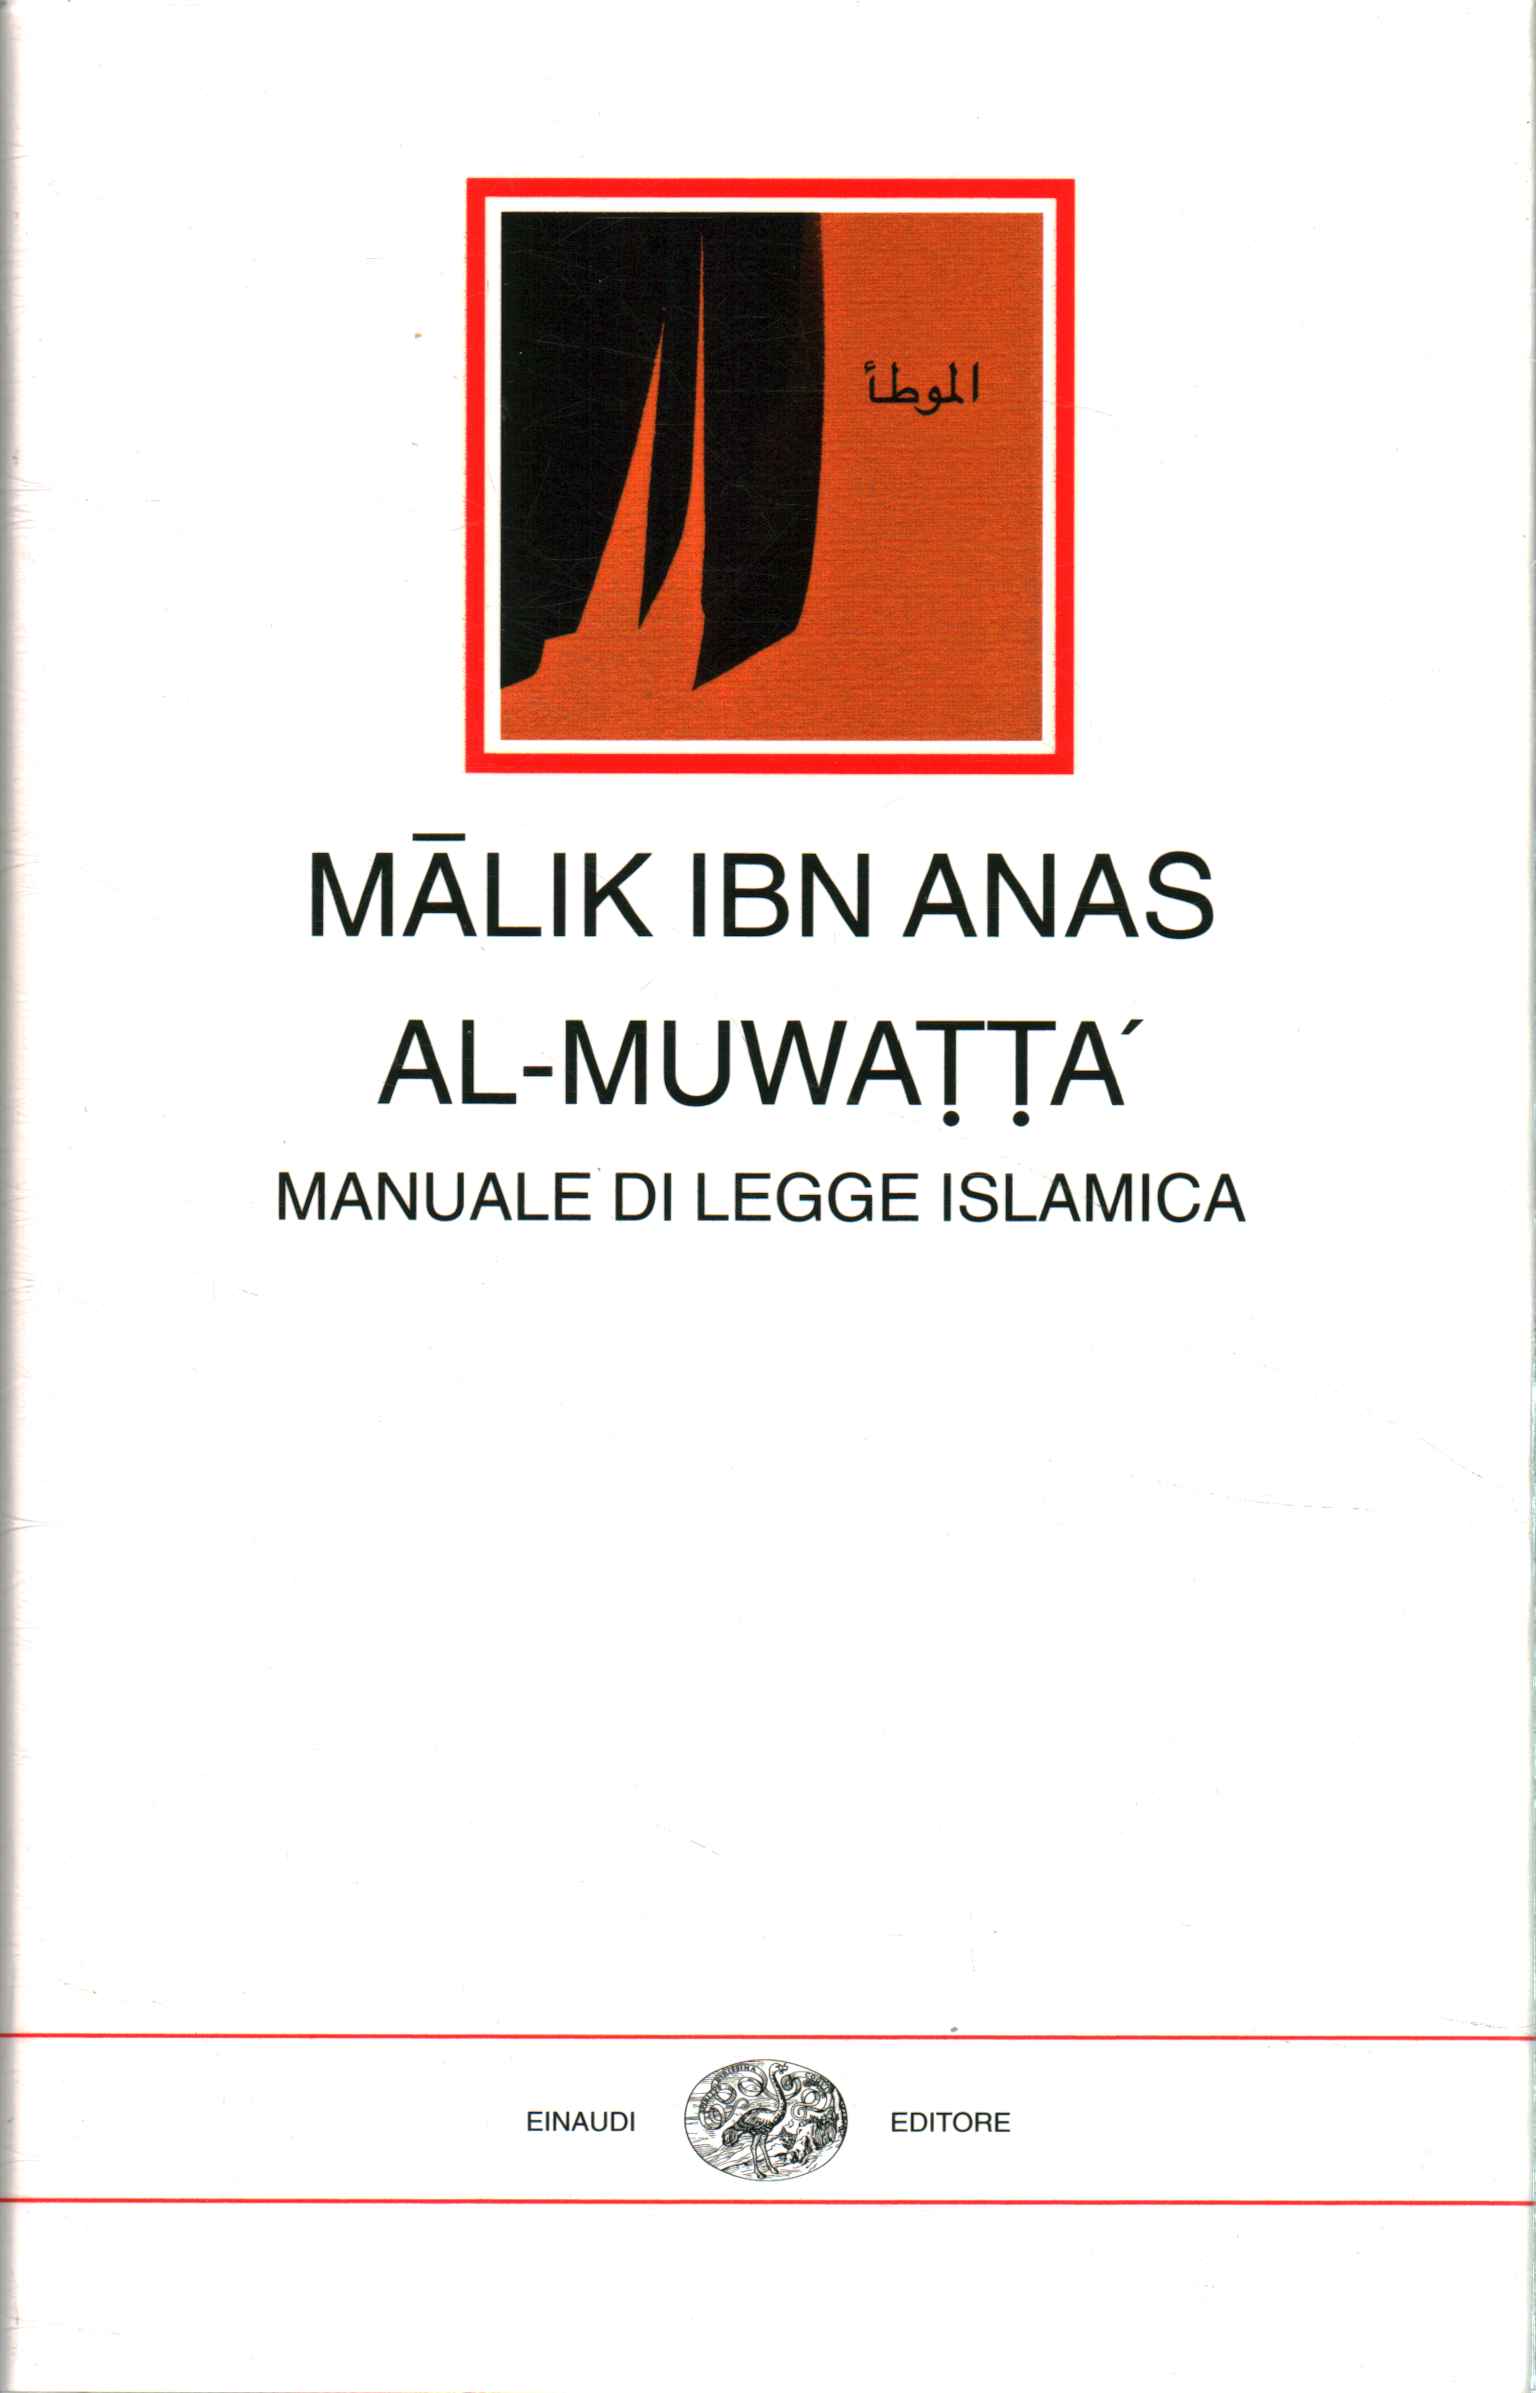 Al-Muwatta'. Manuale di legge i